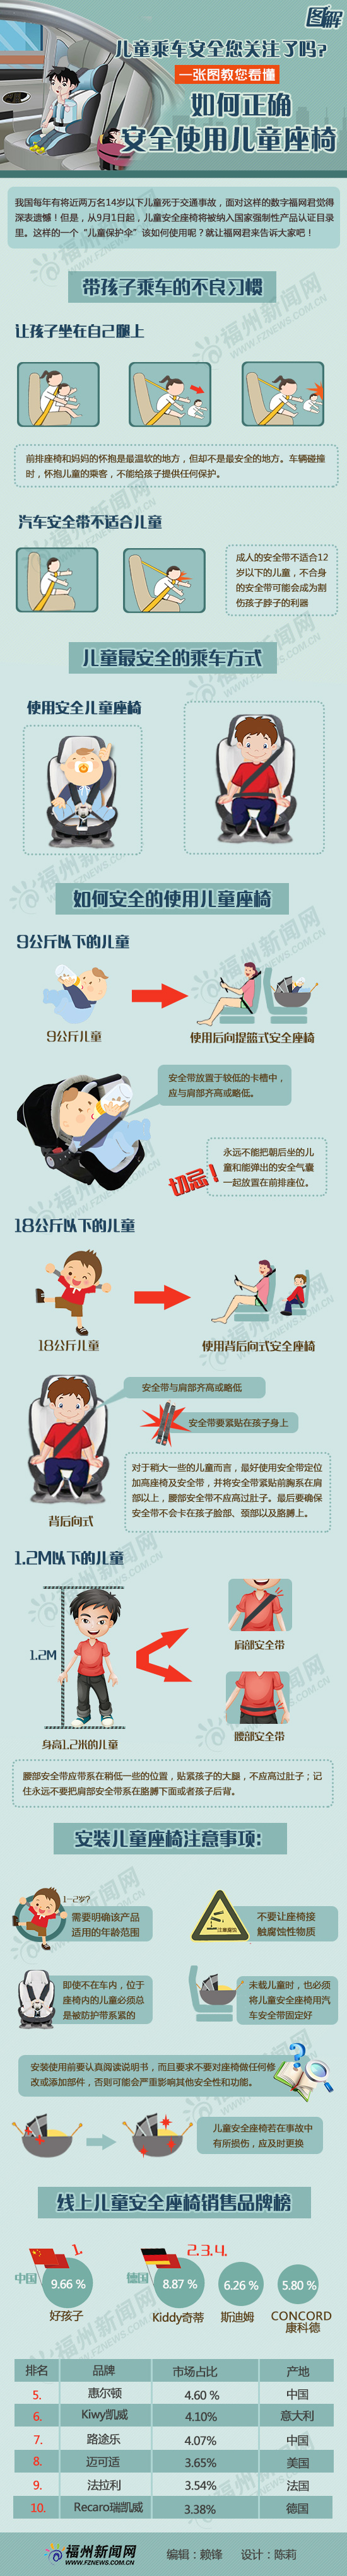 儿童乘车安全您关注了吗？ 一张图教您看懂  如何正确、安全使用儿童座椅